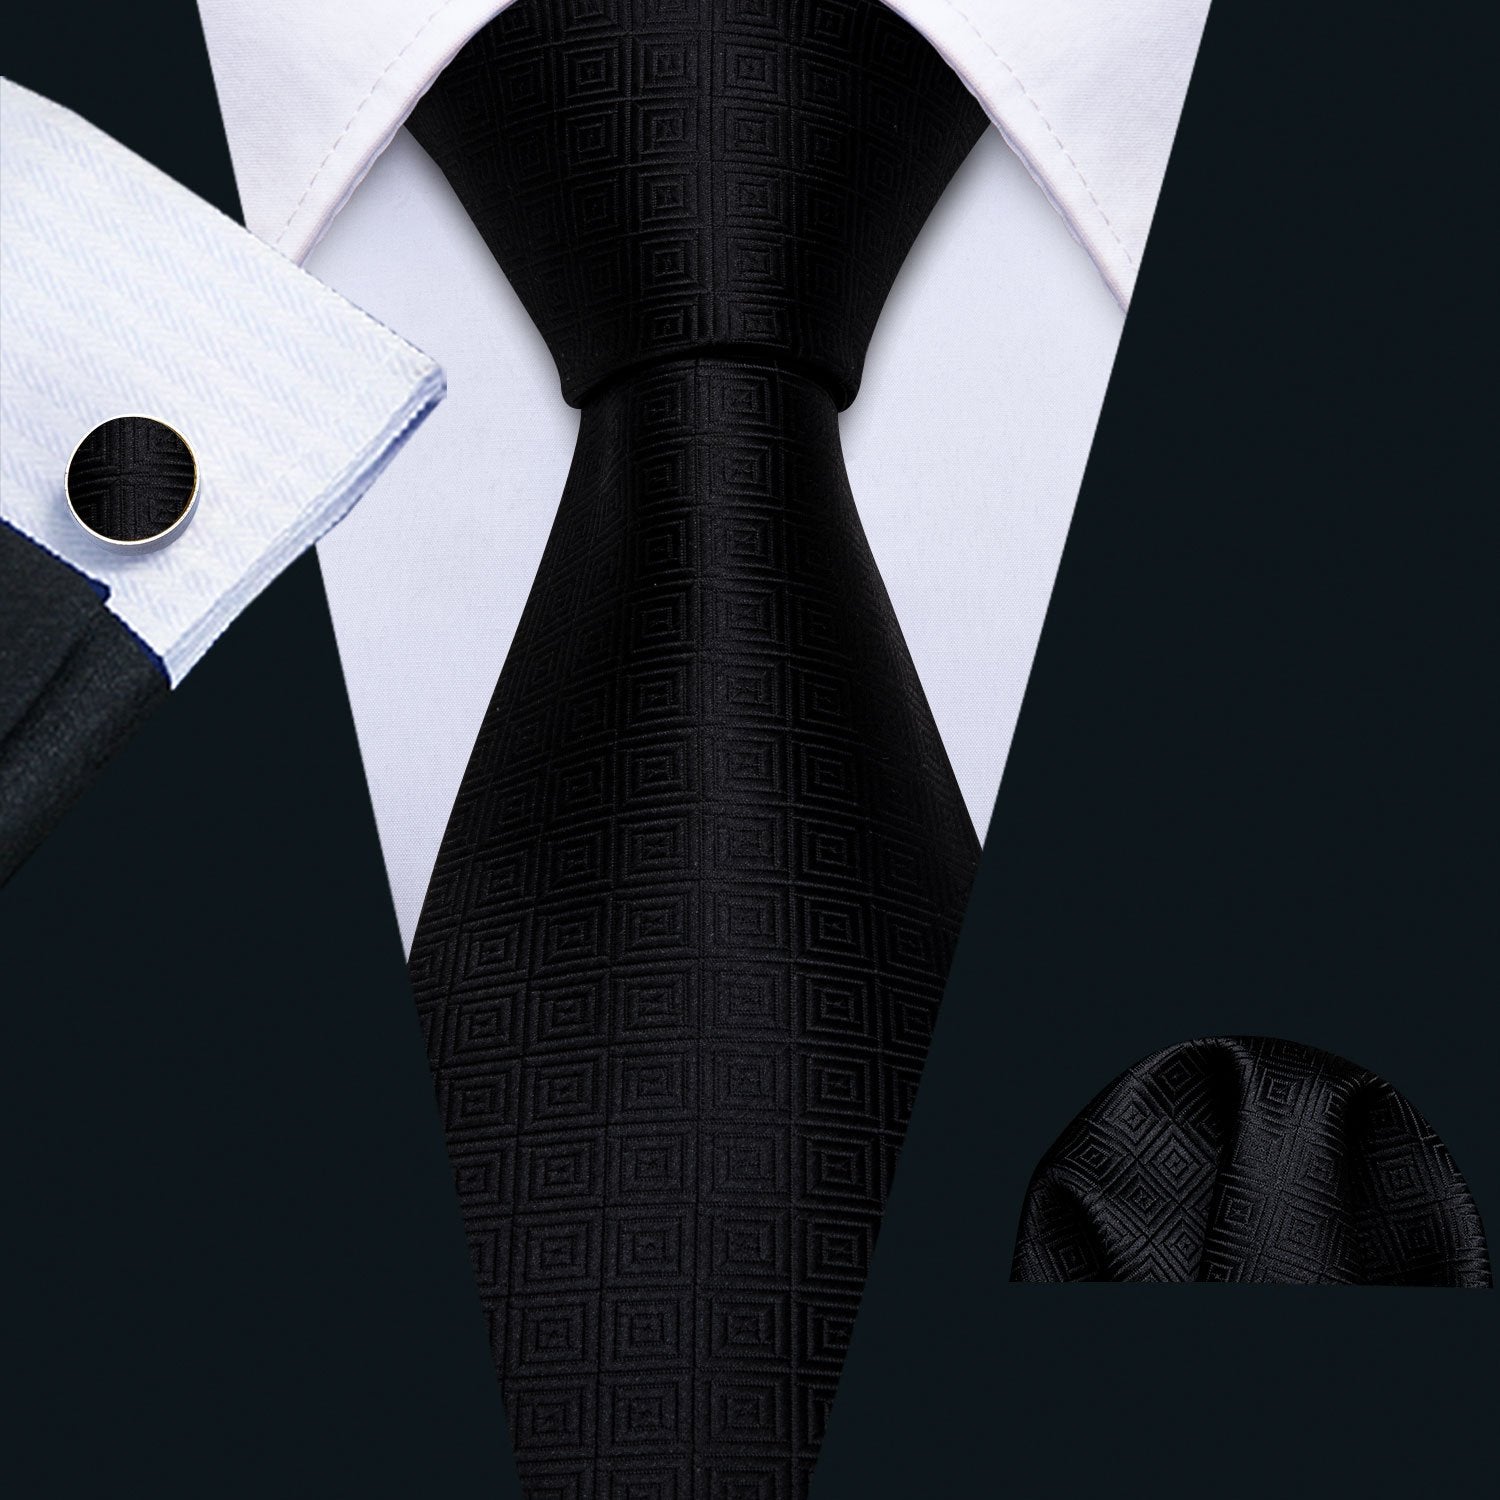 Black Novelty Necktie Alloy Lapel Pin Brooch Pocket Square Cufflinks Gift Box Set